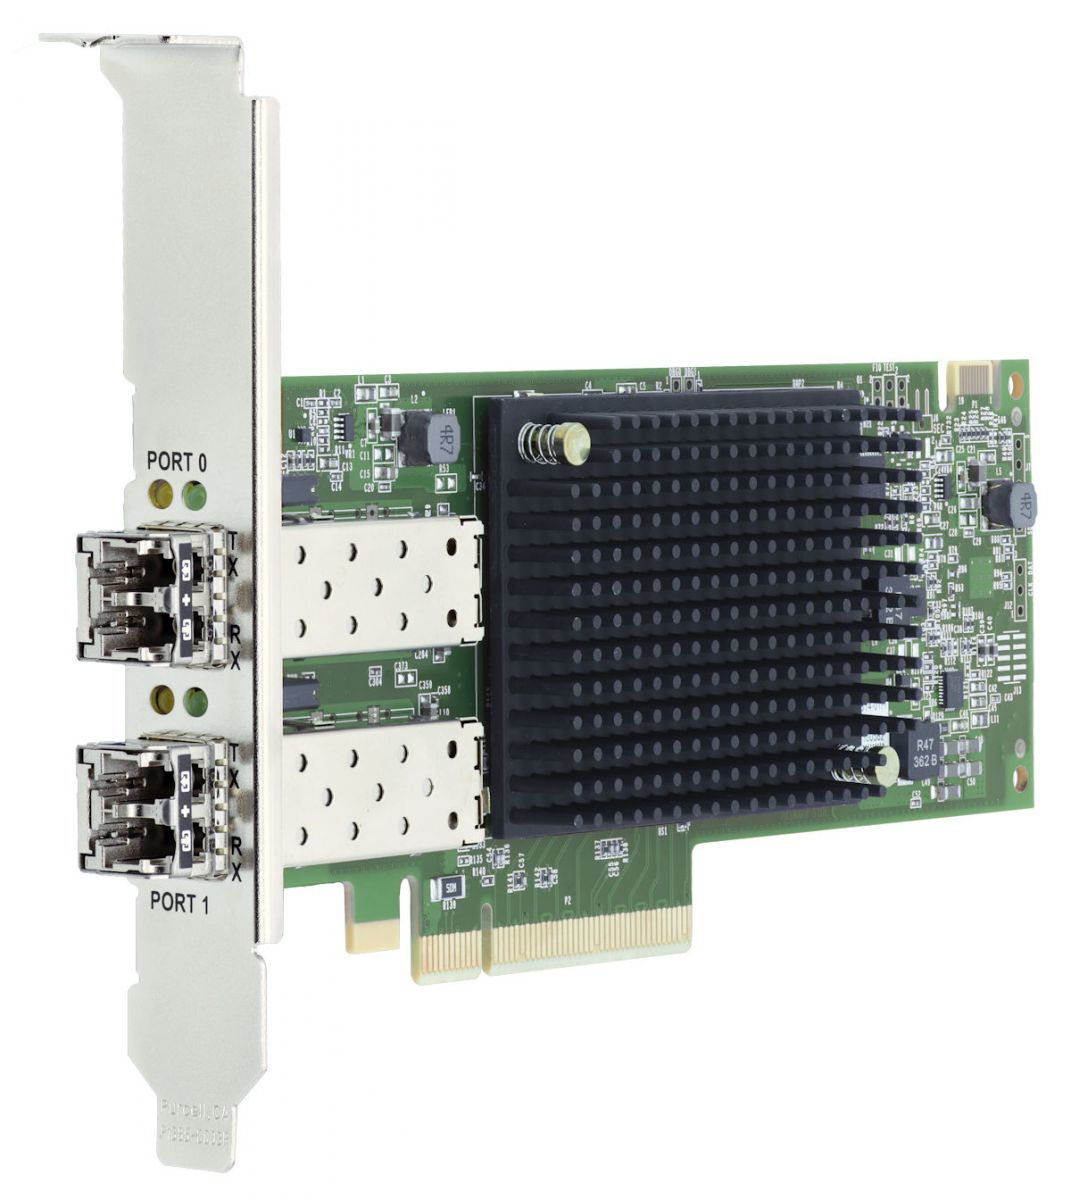 Lenovo Emulex LPe35002 32Gb 2-port PCIe Fibre Channel Adapter - Hostbus-Adapter - PCIe 4.0 x8 Low-Profile - 32Gb Fibre Channel Gen 7 (Short Wave)